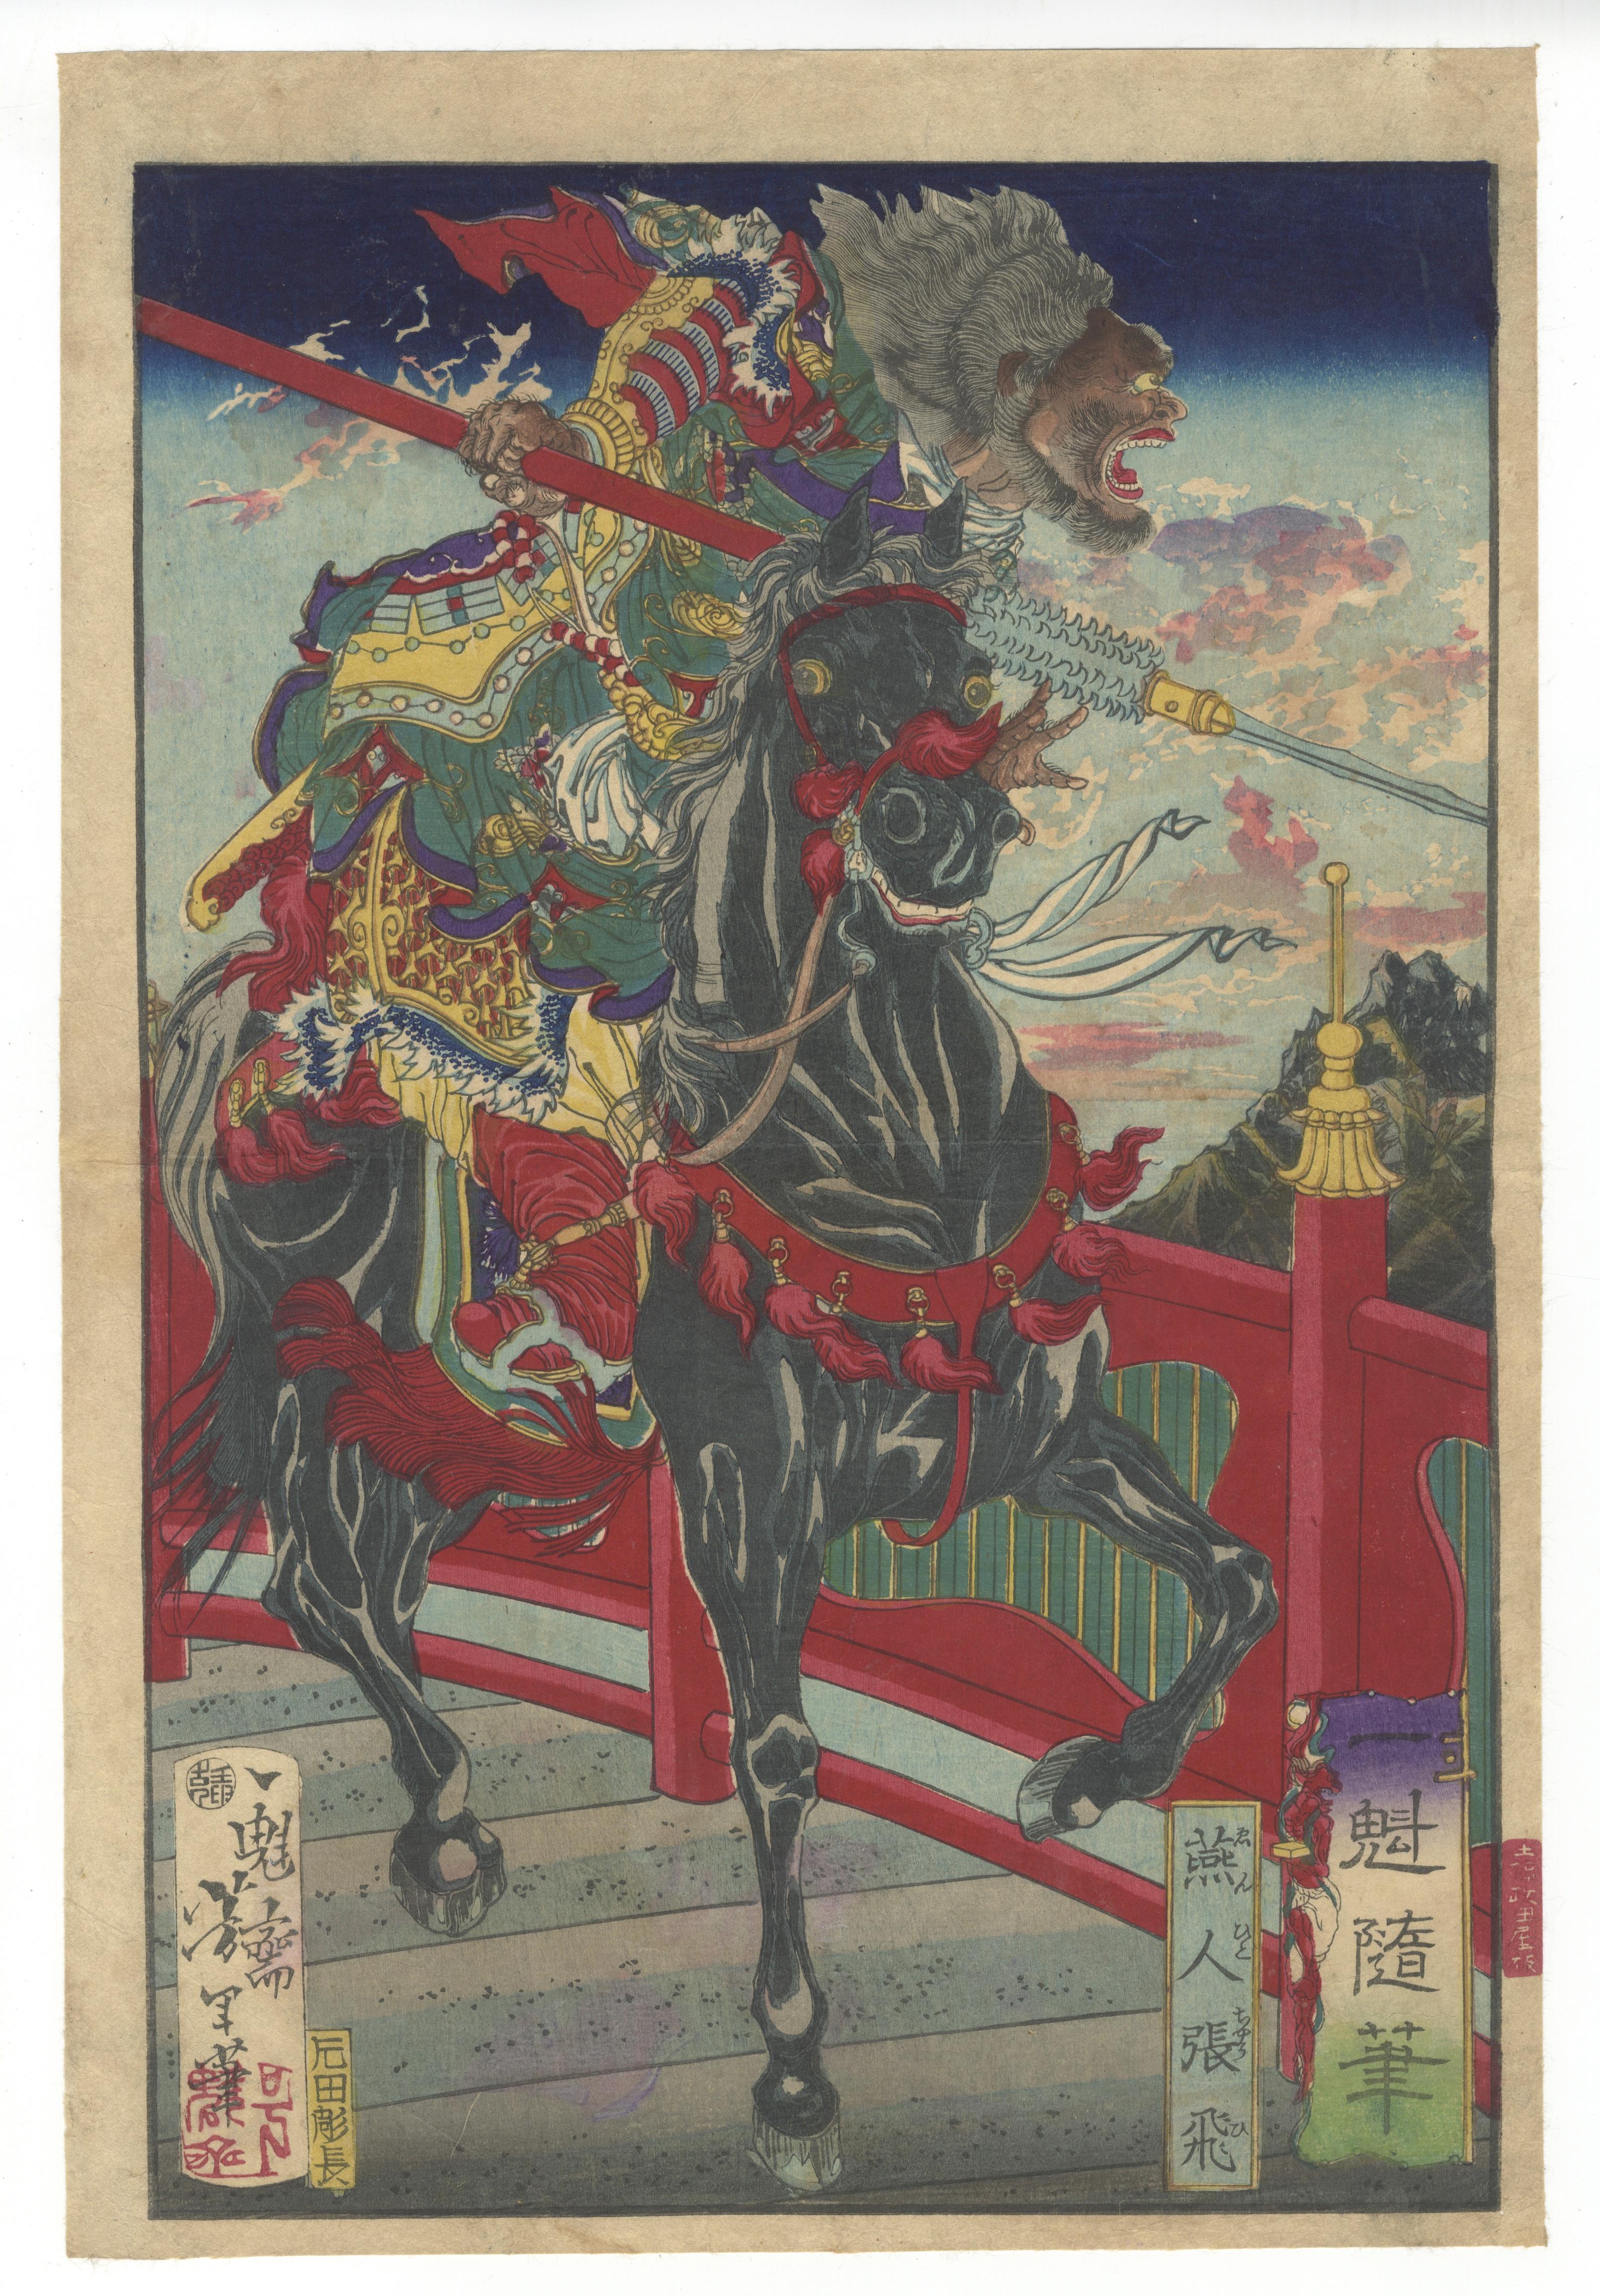 Tsukioka Yoshitoshi Portrait Print - Yoshitoshi, Original Japanese Woodblock Print, Three Kingdoms, China, History